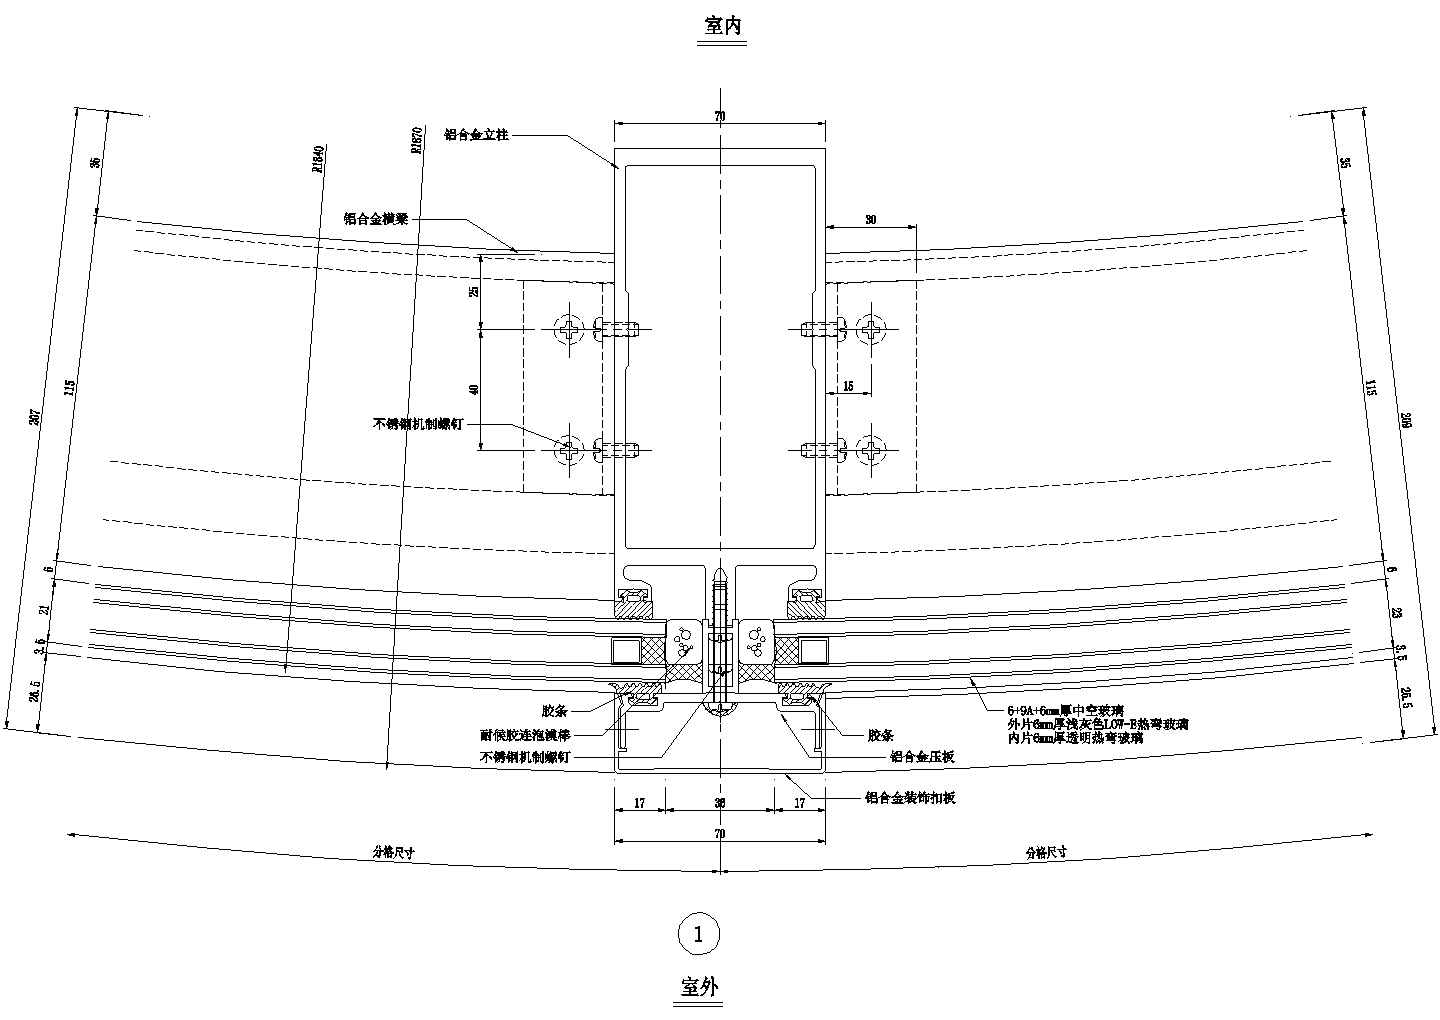 弧型明框幕墙横剖节点图CAD施工图设计